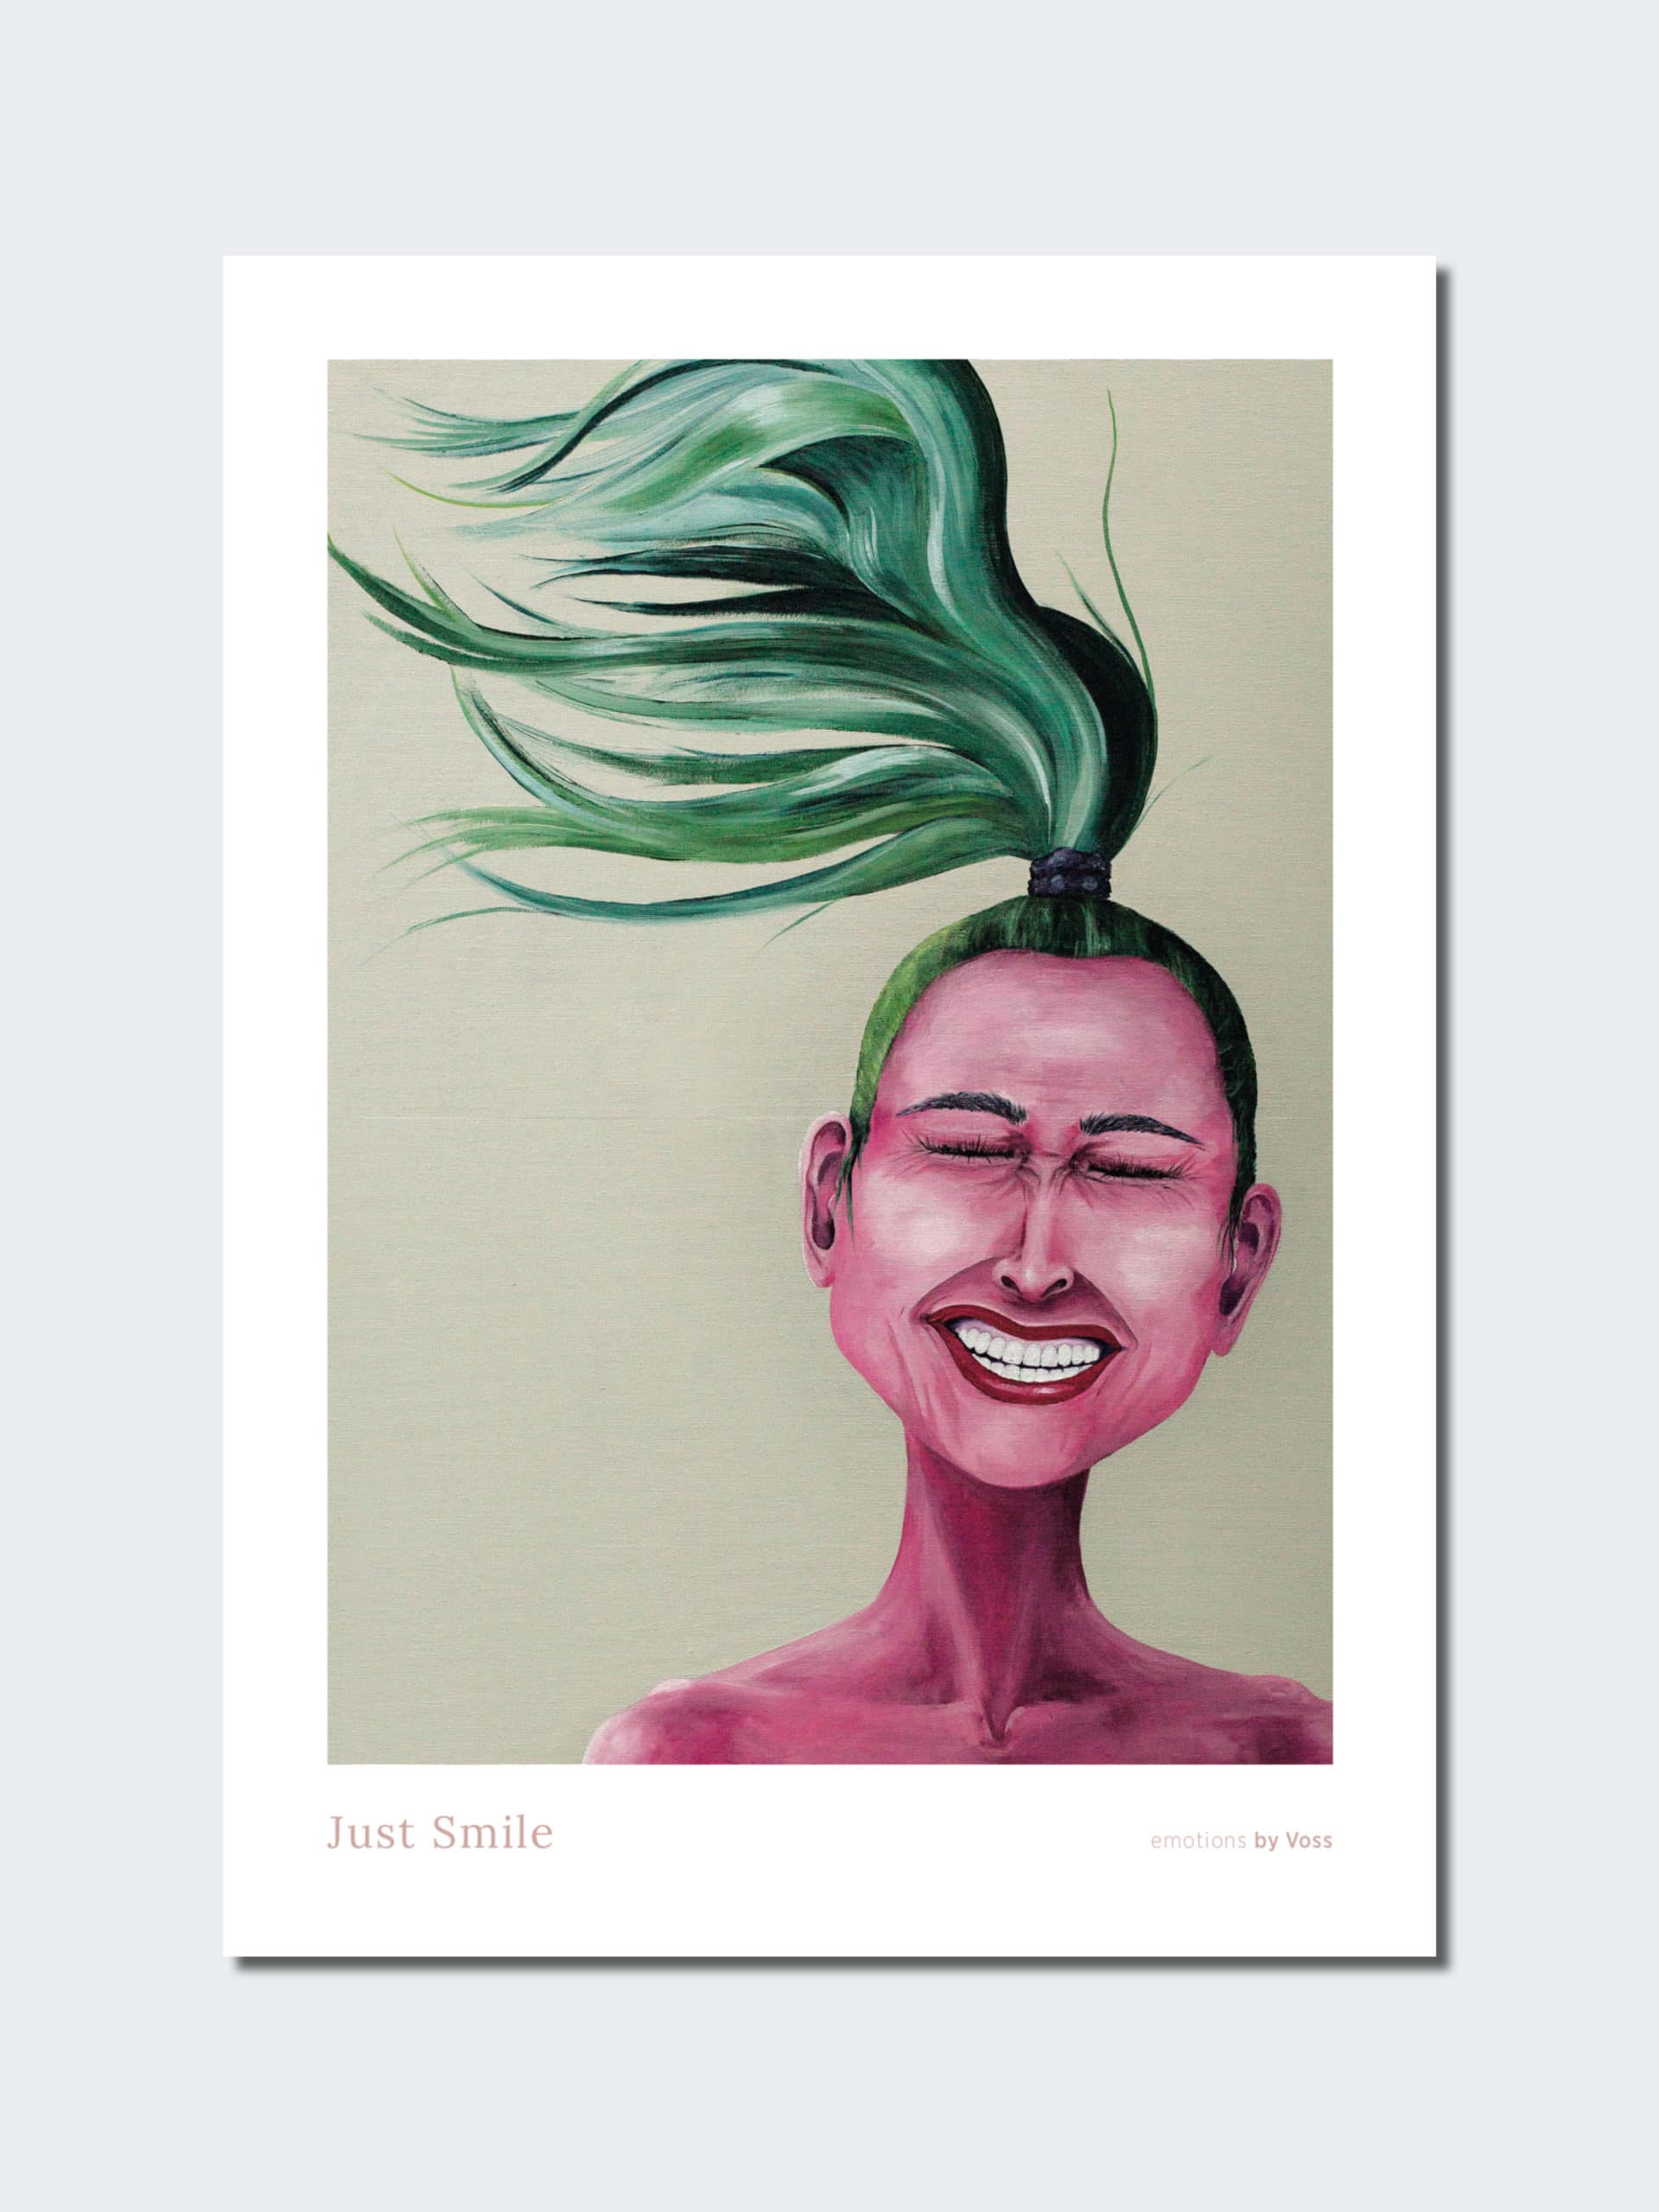 konkurs design mistænksom Poster, Emotions by Voss, Just Smile - All By Voss